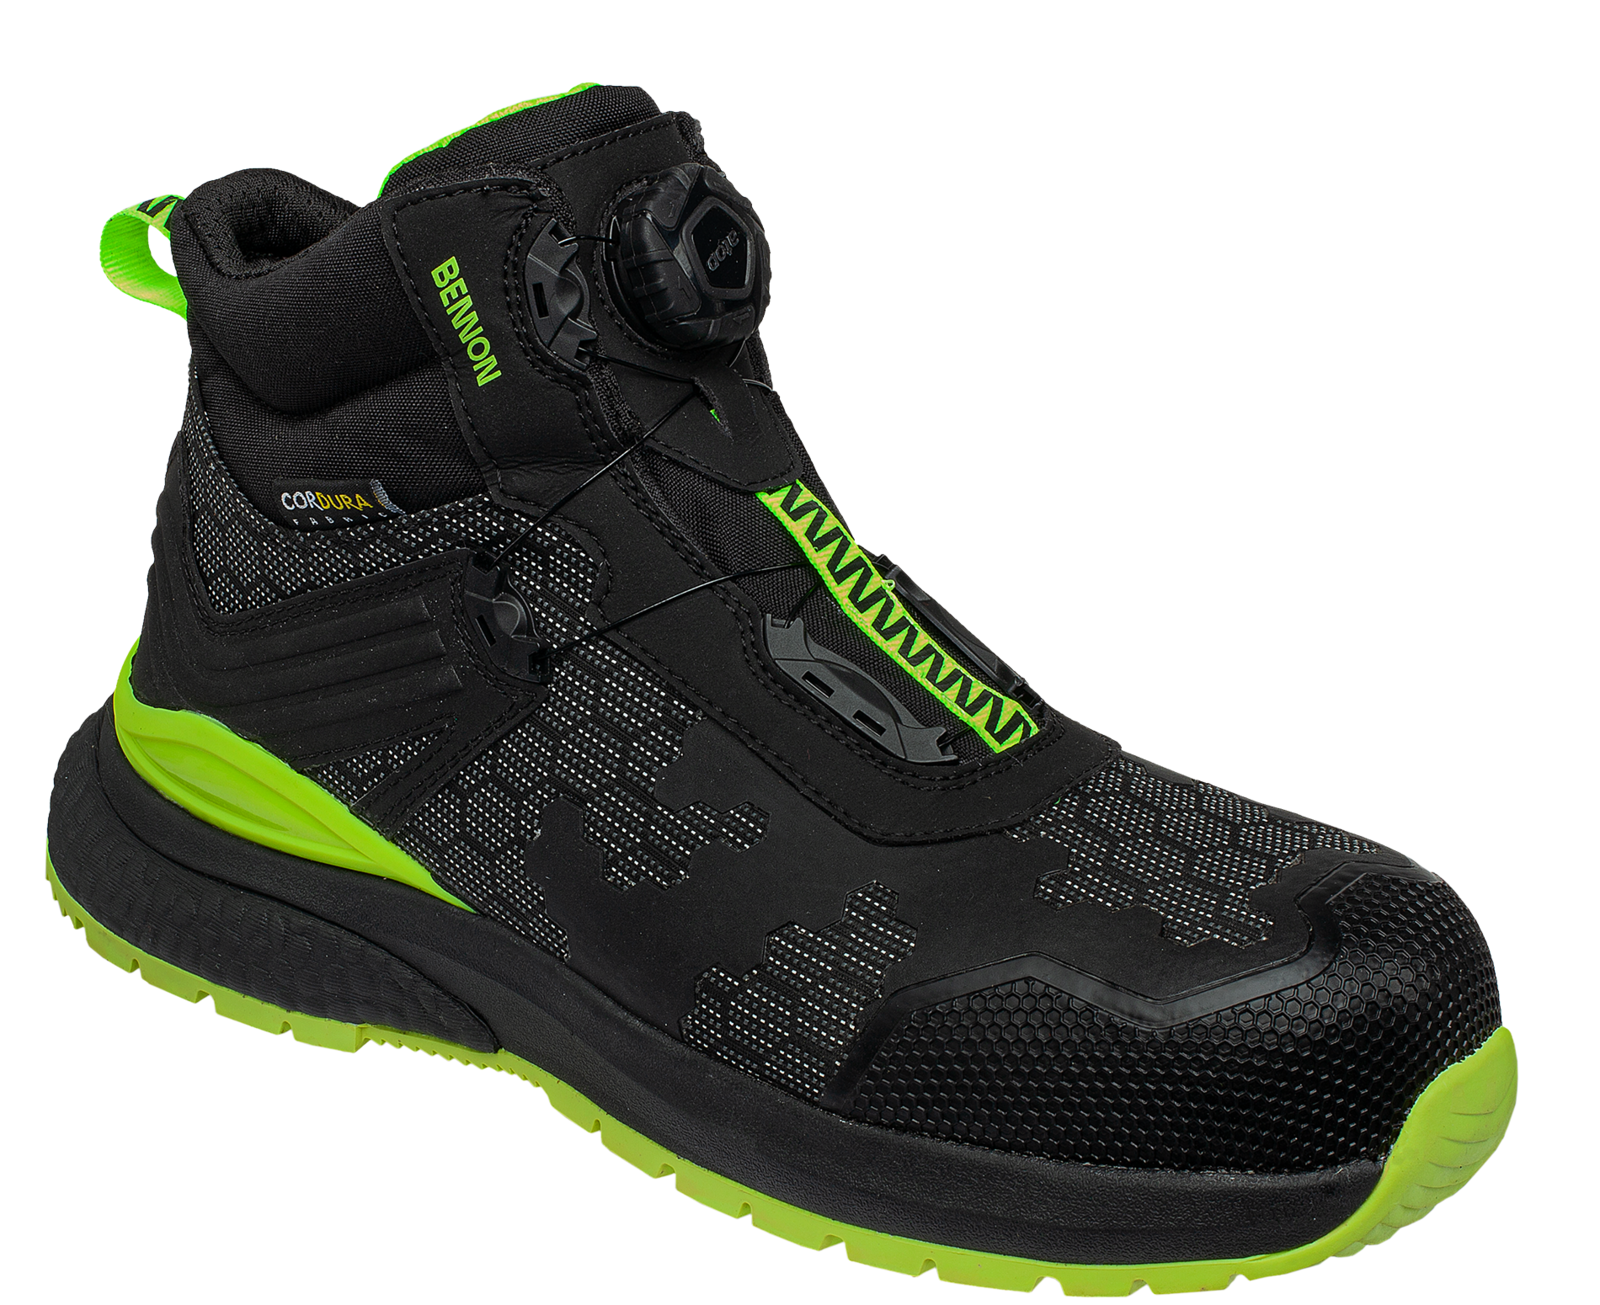 Bezpečnostná obuv Bennon Predator S3 ESD High - veľkosť: 39, farba: čierna/zelená